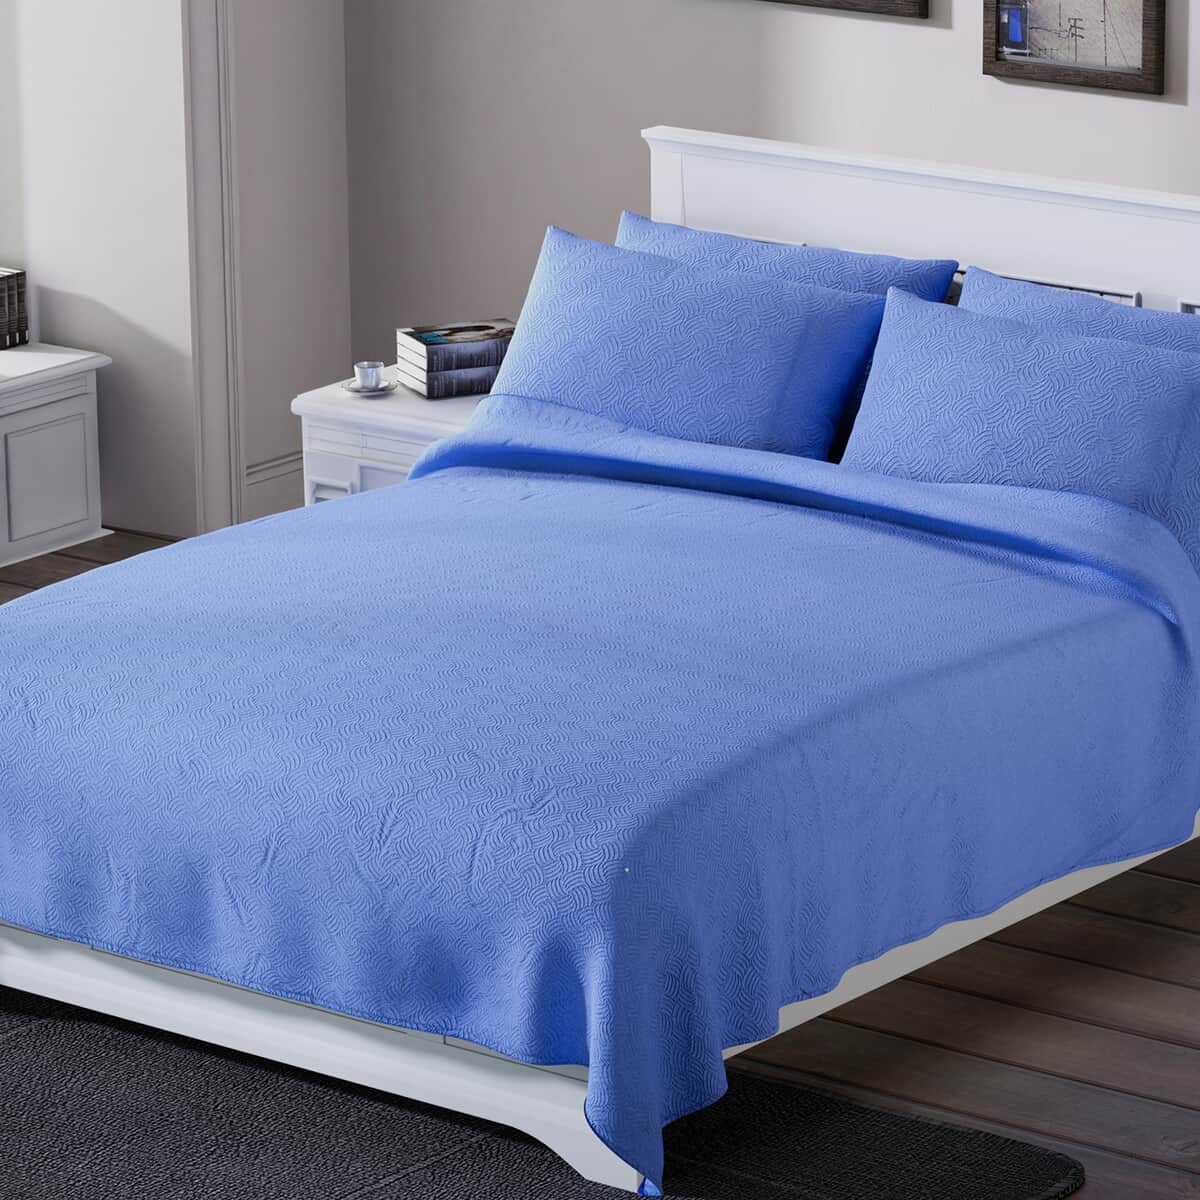 Homesmart Blue Solid Embossed 6 pcs Microfiber Sheet Set - King, Bed Sheets, Fitted Sheet, Bed Sheet Set, Microfiber Sheets image number 1